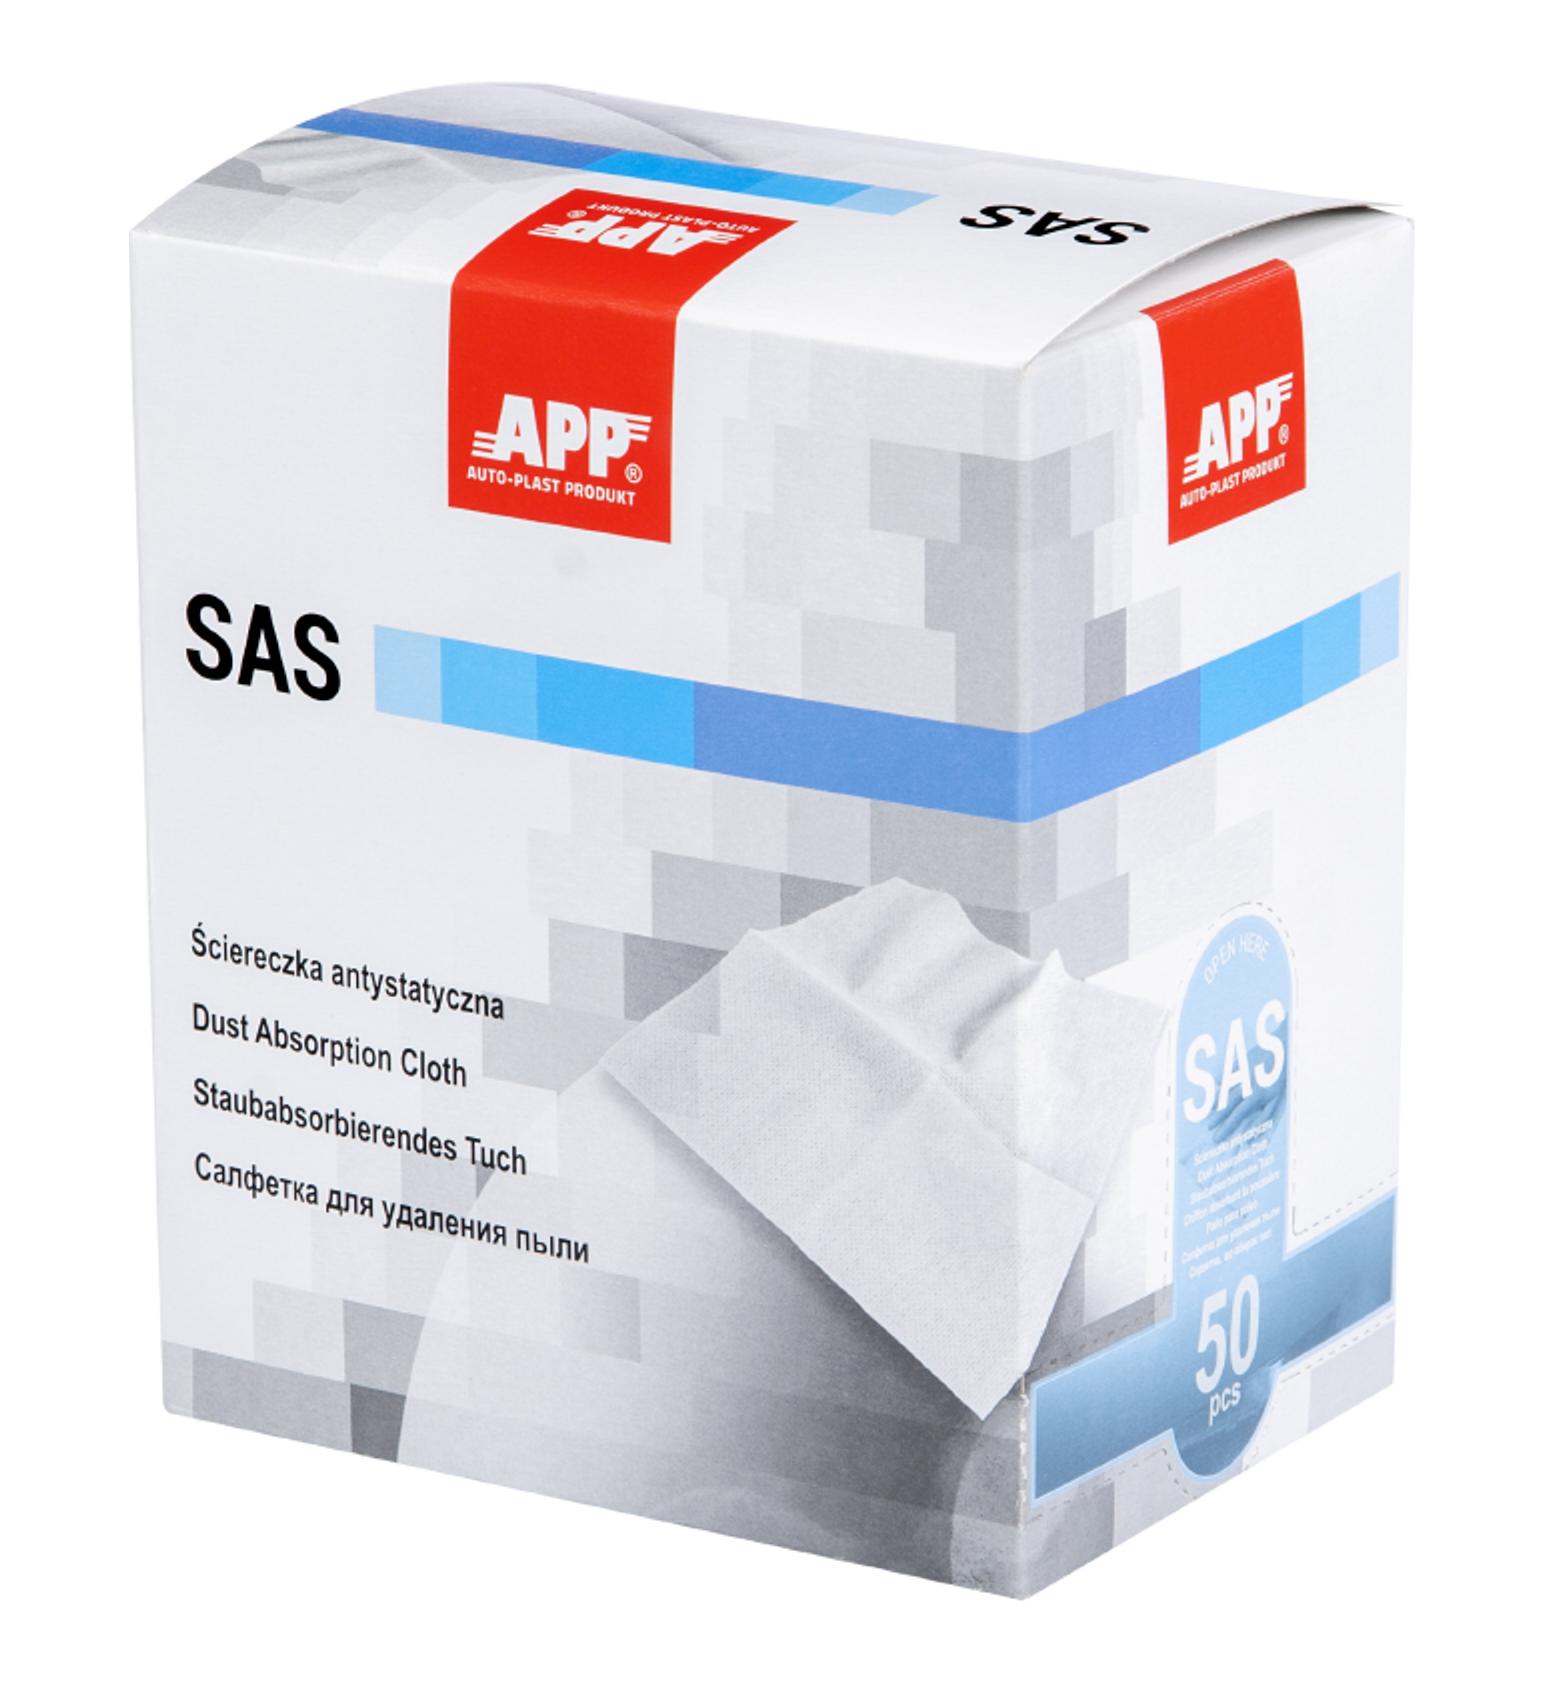 APP 250502 SAS - Staubbindetuch Antistatiktuch 900mm x 450mm 10 Stk. | Honigtuch Staubtuch Autolack reinigen Lack